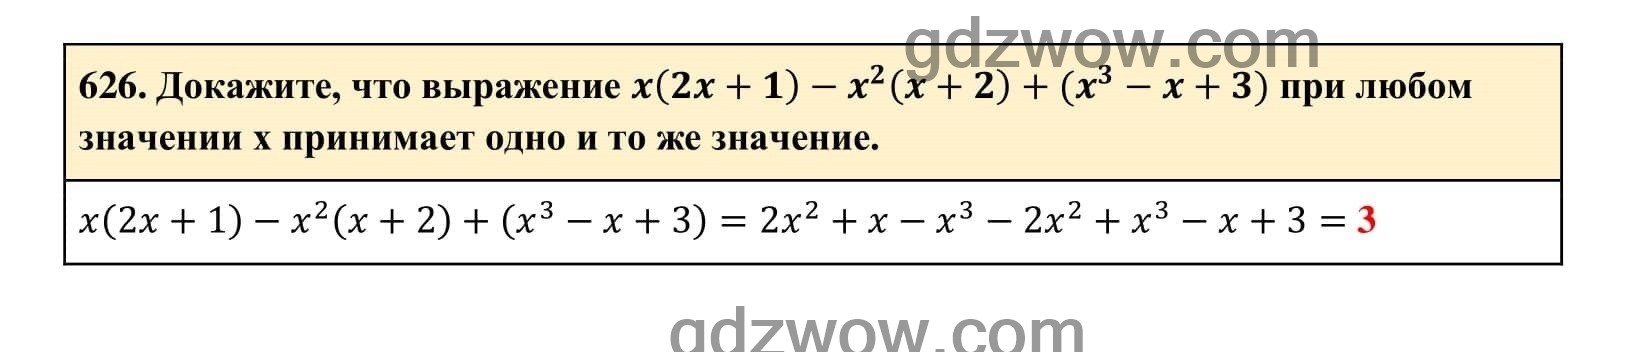 Упражнение 626 - ГДЗ по Алгебре 7 класс Учебник Макарычев (решебник) - GDZwow